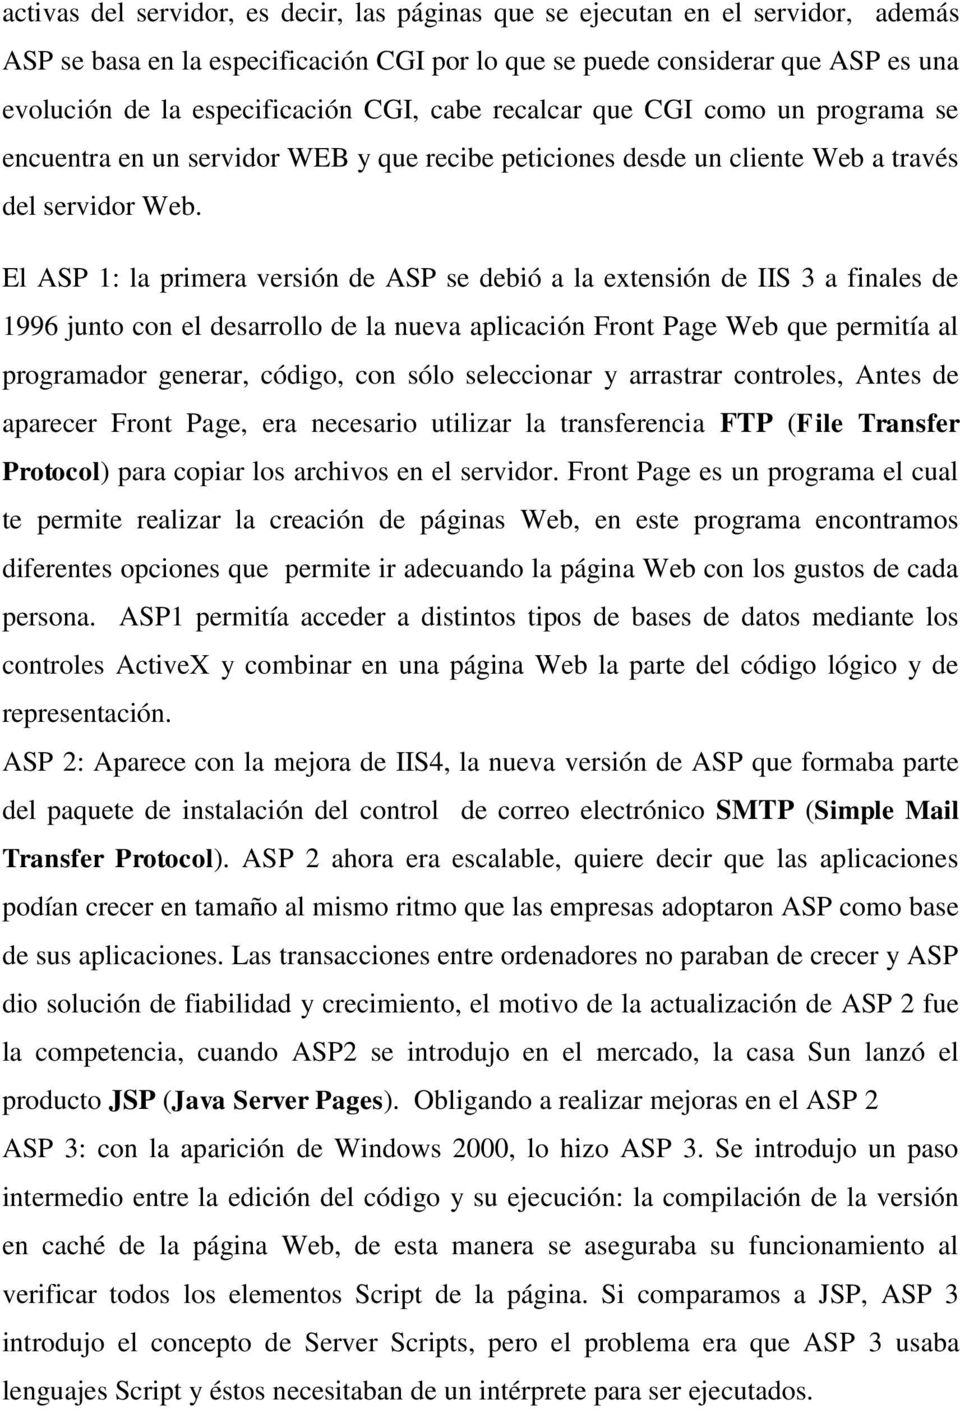 El ASP 1: la primera versión de ASP se debió a la extensión de IIS 3 a finales de 1996 junto con el desarrollo de la nueva aplicación Front Page Web que permitía al programador generar, código, con